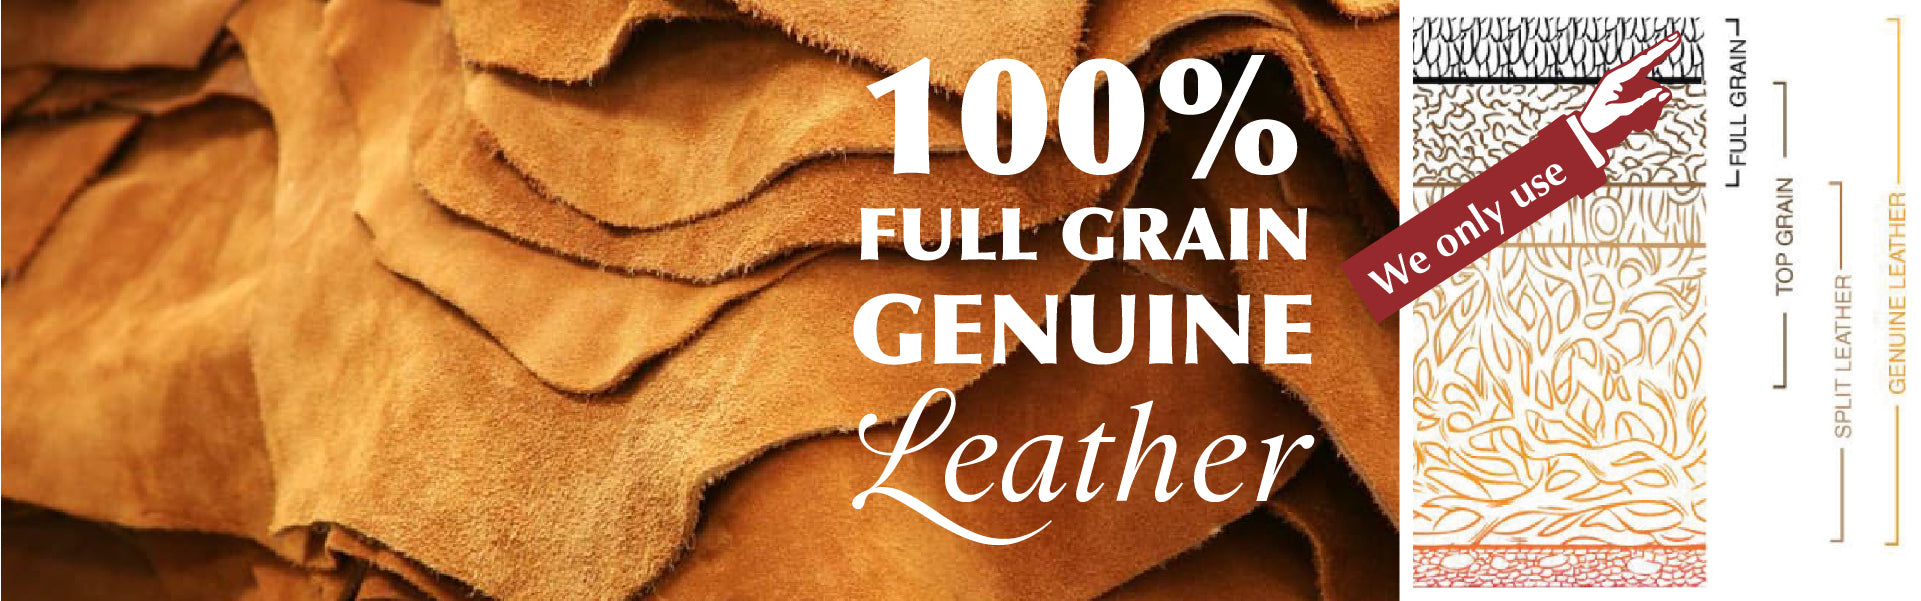 100% USA Full Grain Genuine Cow Leather - Premium Materials